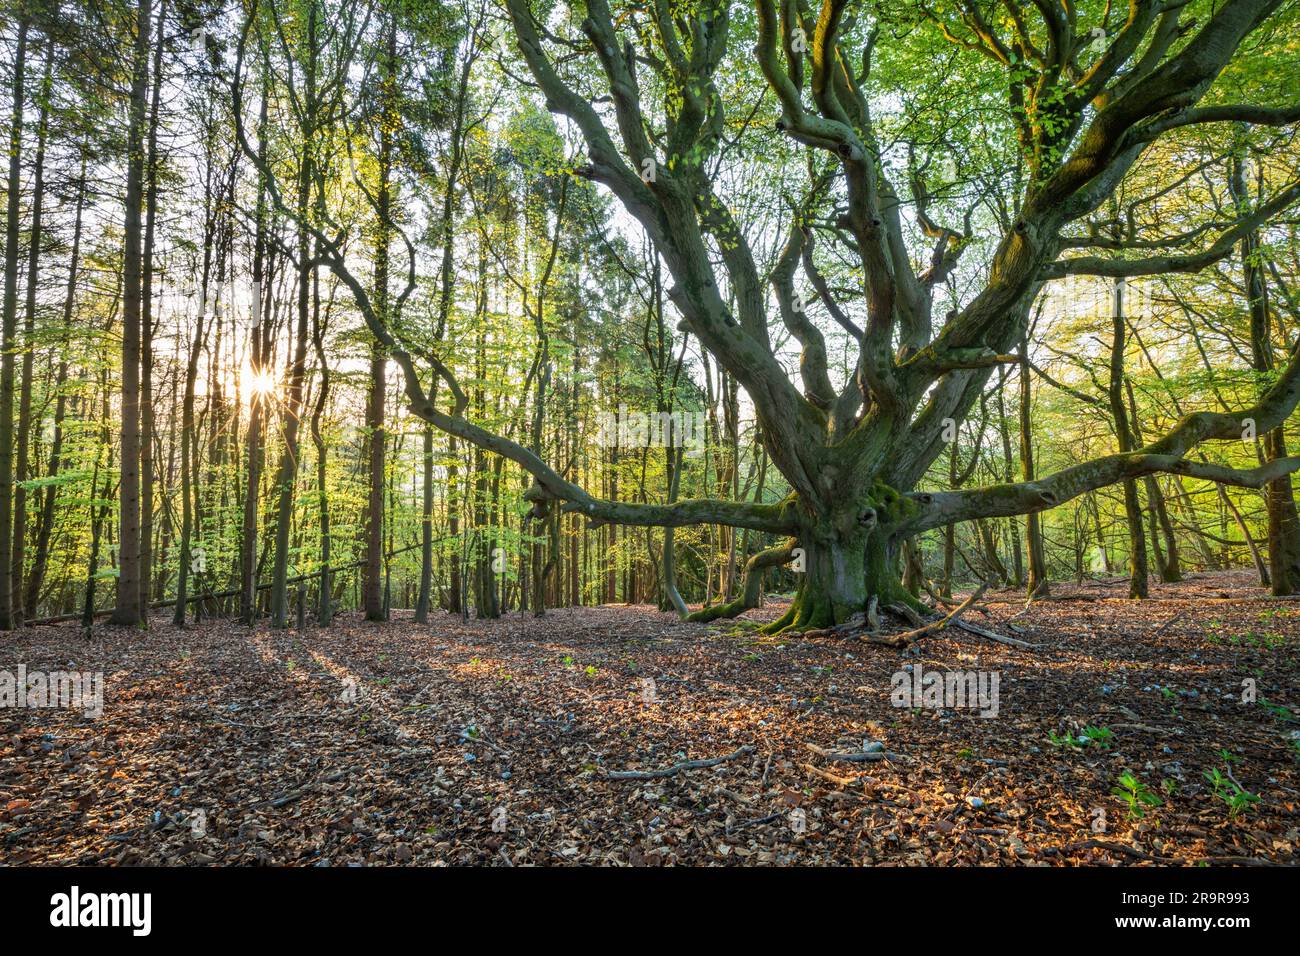 Le soleil se lève dans les bois à feuilles caduques au printemps, Highclere, Hampshire, Angleterre, Royaume-Uni, Europe Banque D'Images